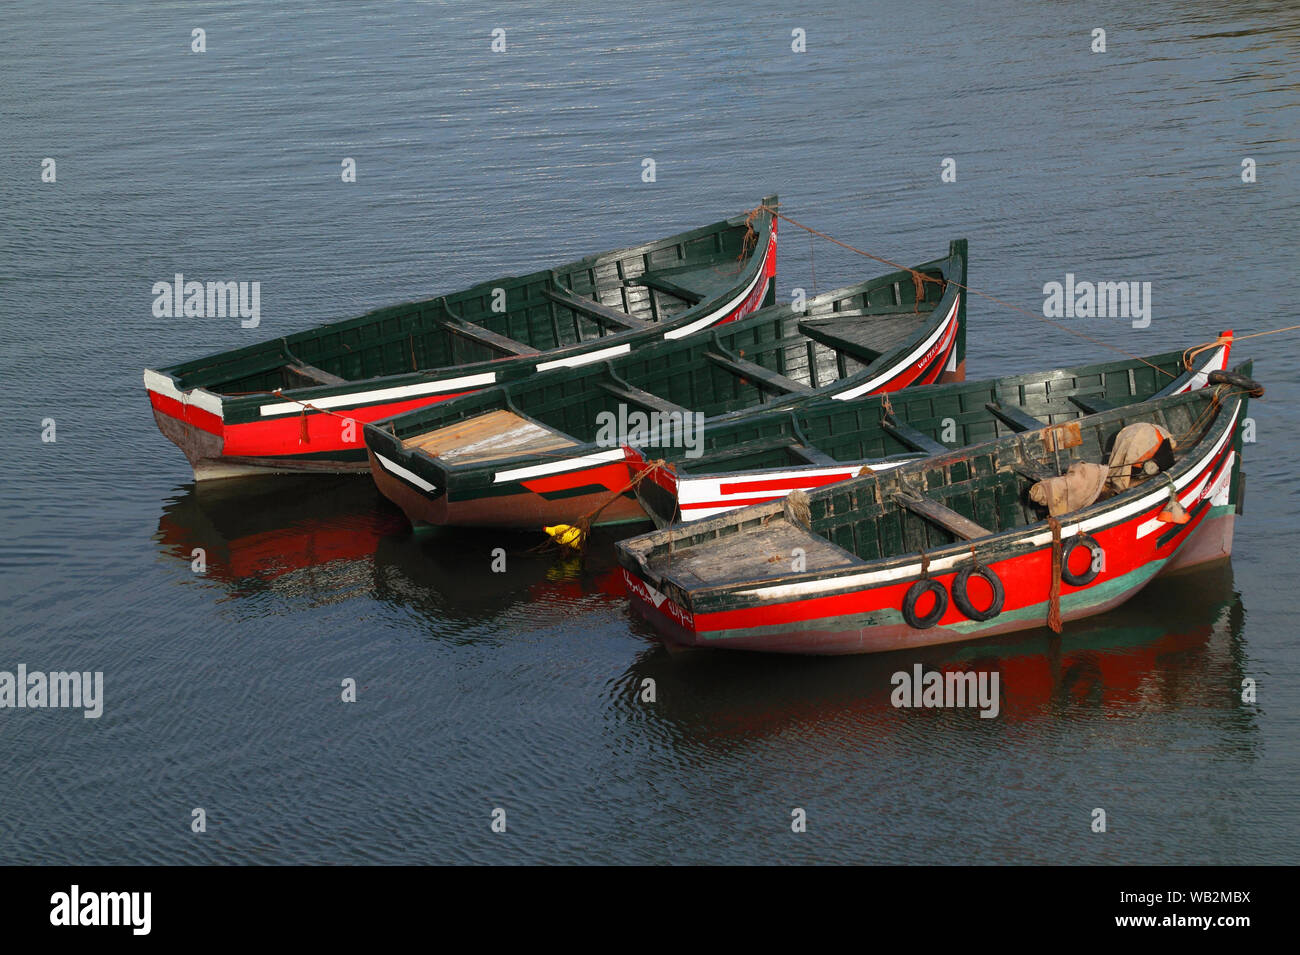 Marokko, El Jadida. Eine kleine Flotte von typischen roten und grünen Holzboote liegt im alten Hafen. UNESCO-Weltkulturerbe. Stockfoto